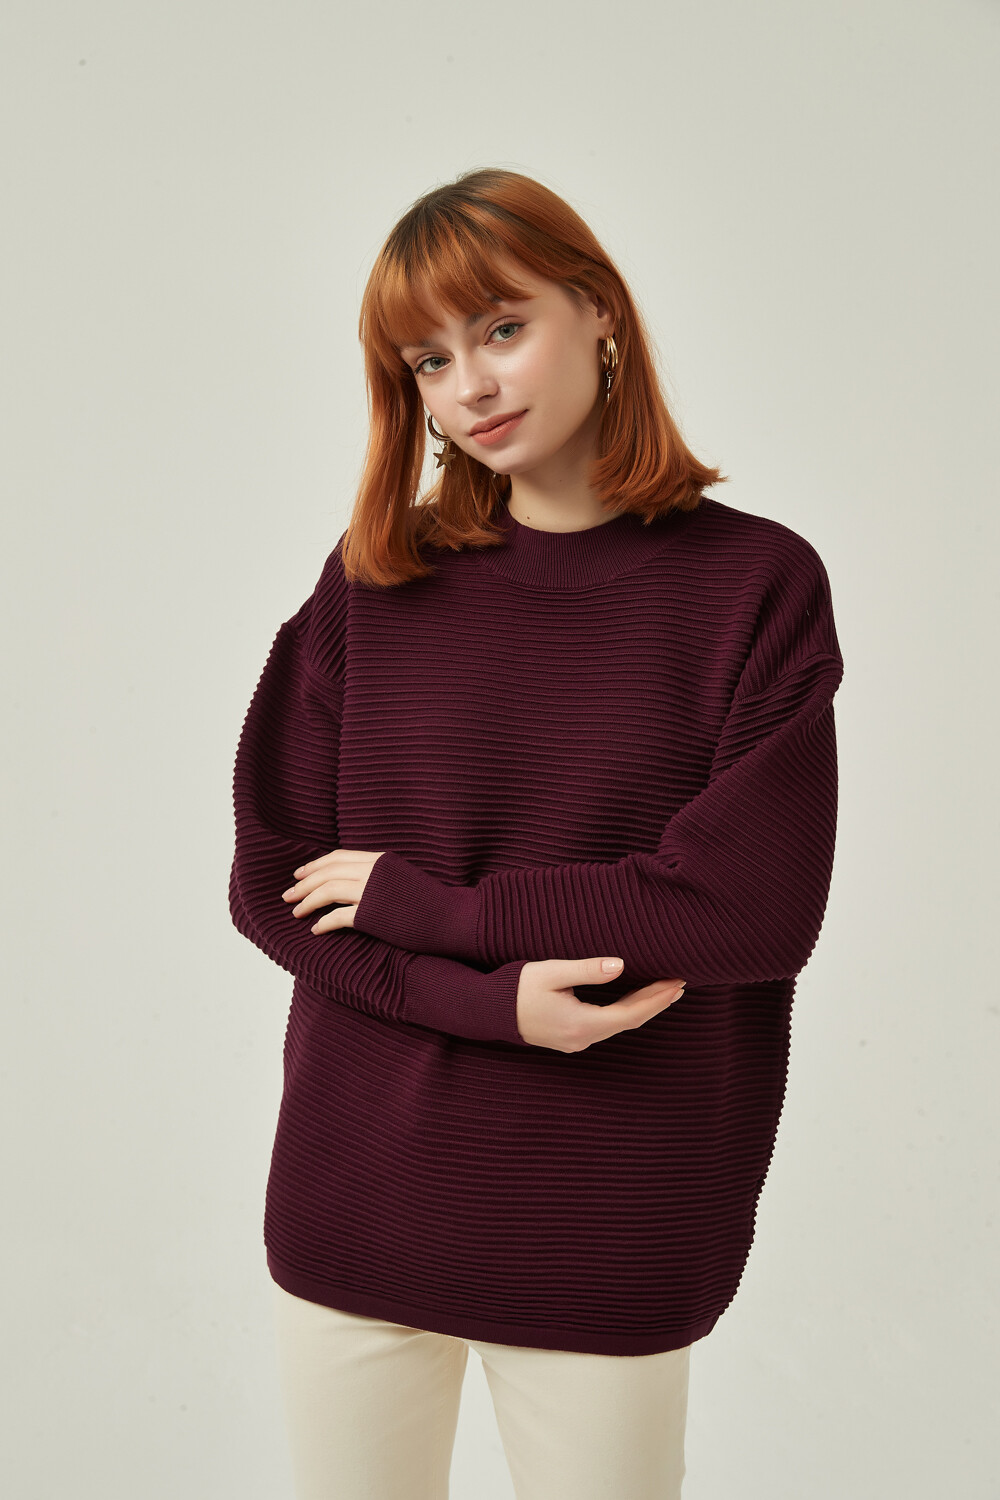 Sweater Uvita Borra De Vino